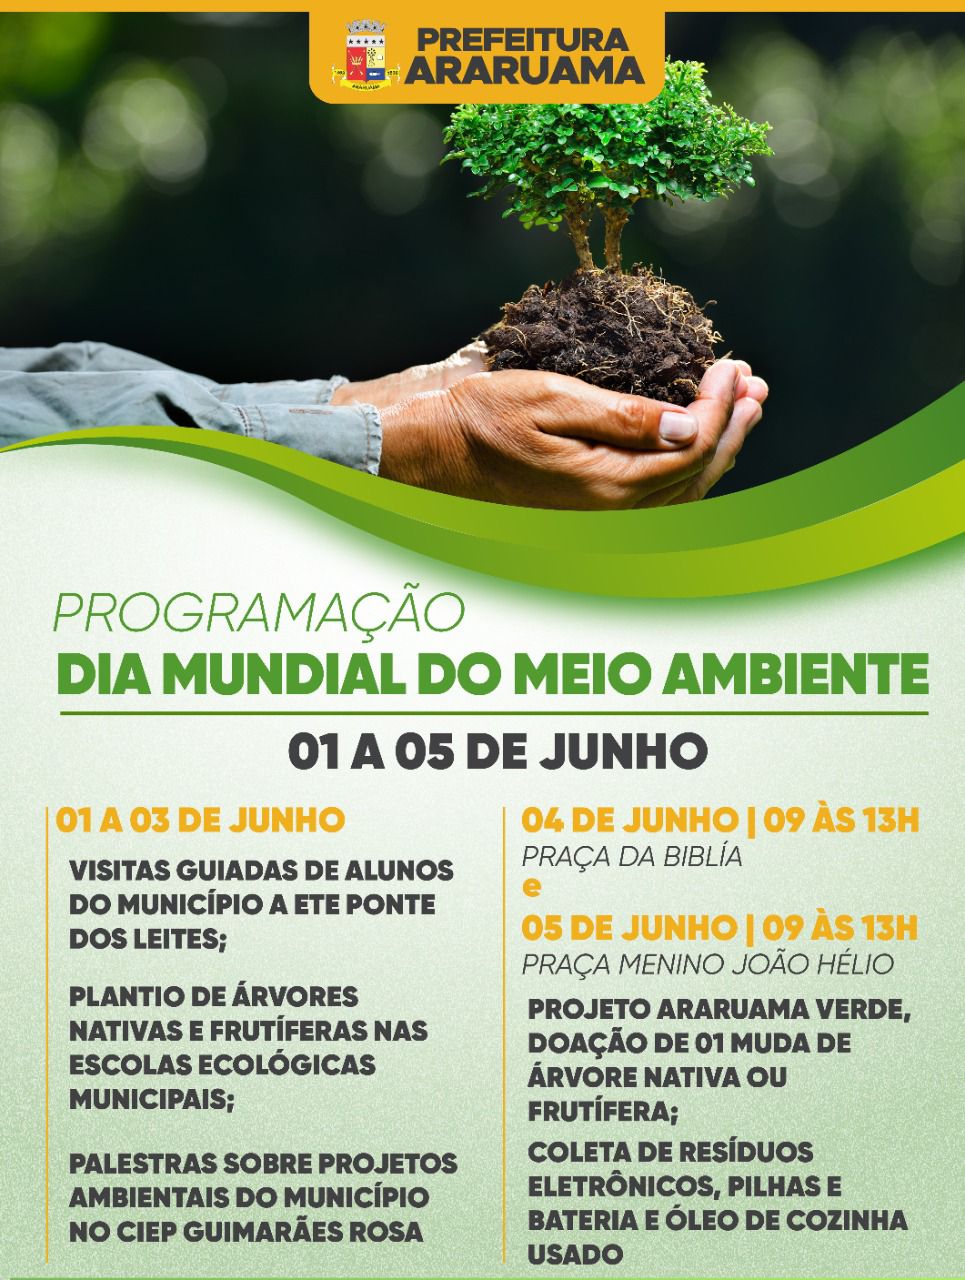 Prefeitura de Araruama vai realizar evento em comemoração ao Dia Mundial do Meio Ambiente